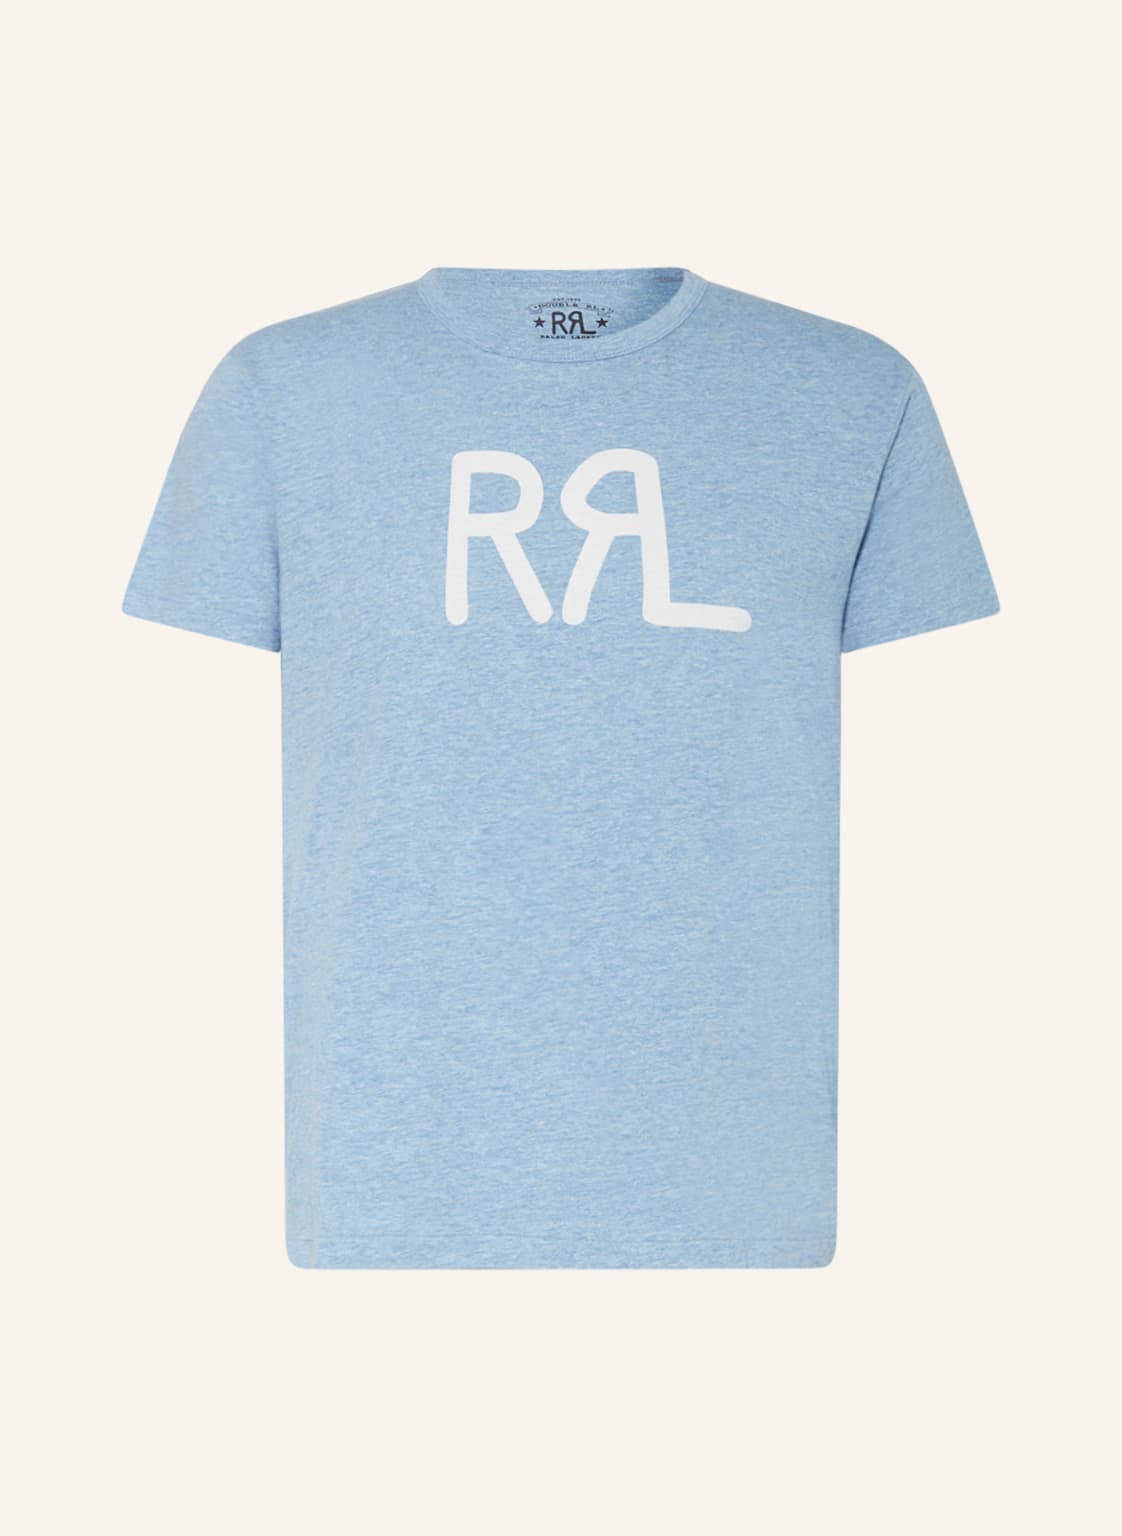 Rrl T-Shirt blau von RRL